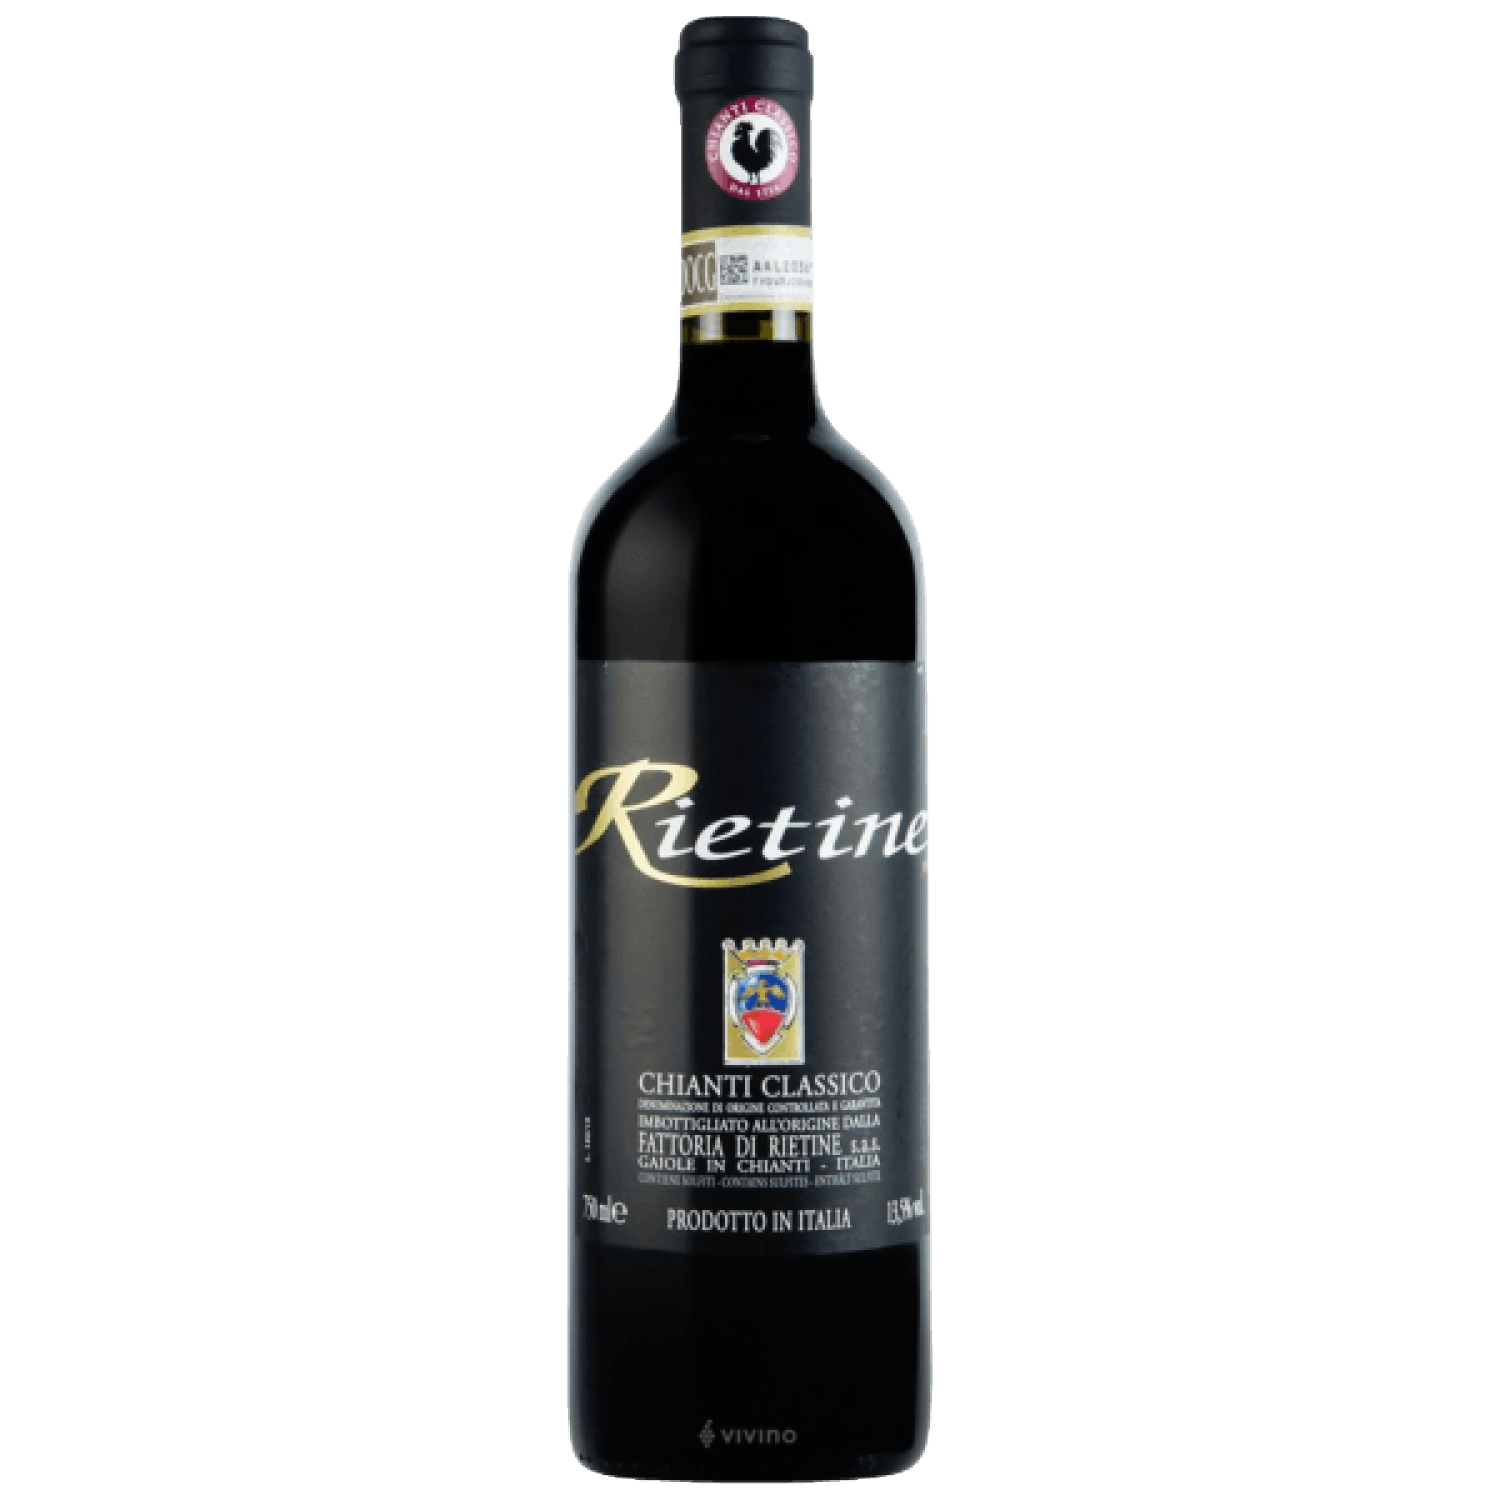 Rietine 2019 – – Wein Kunst DOCG und Classico Chianti